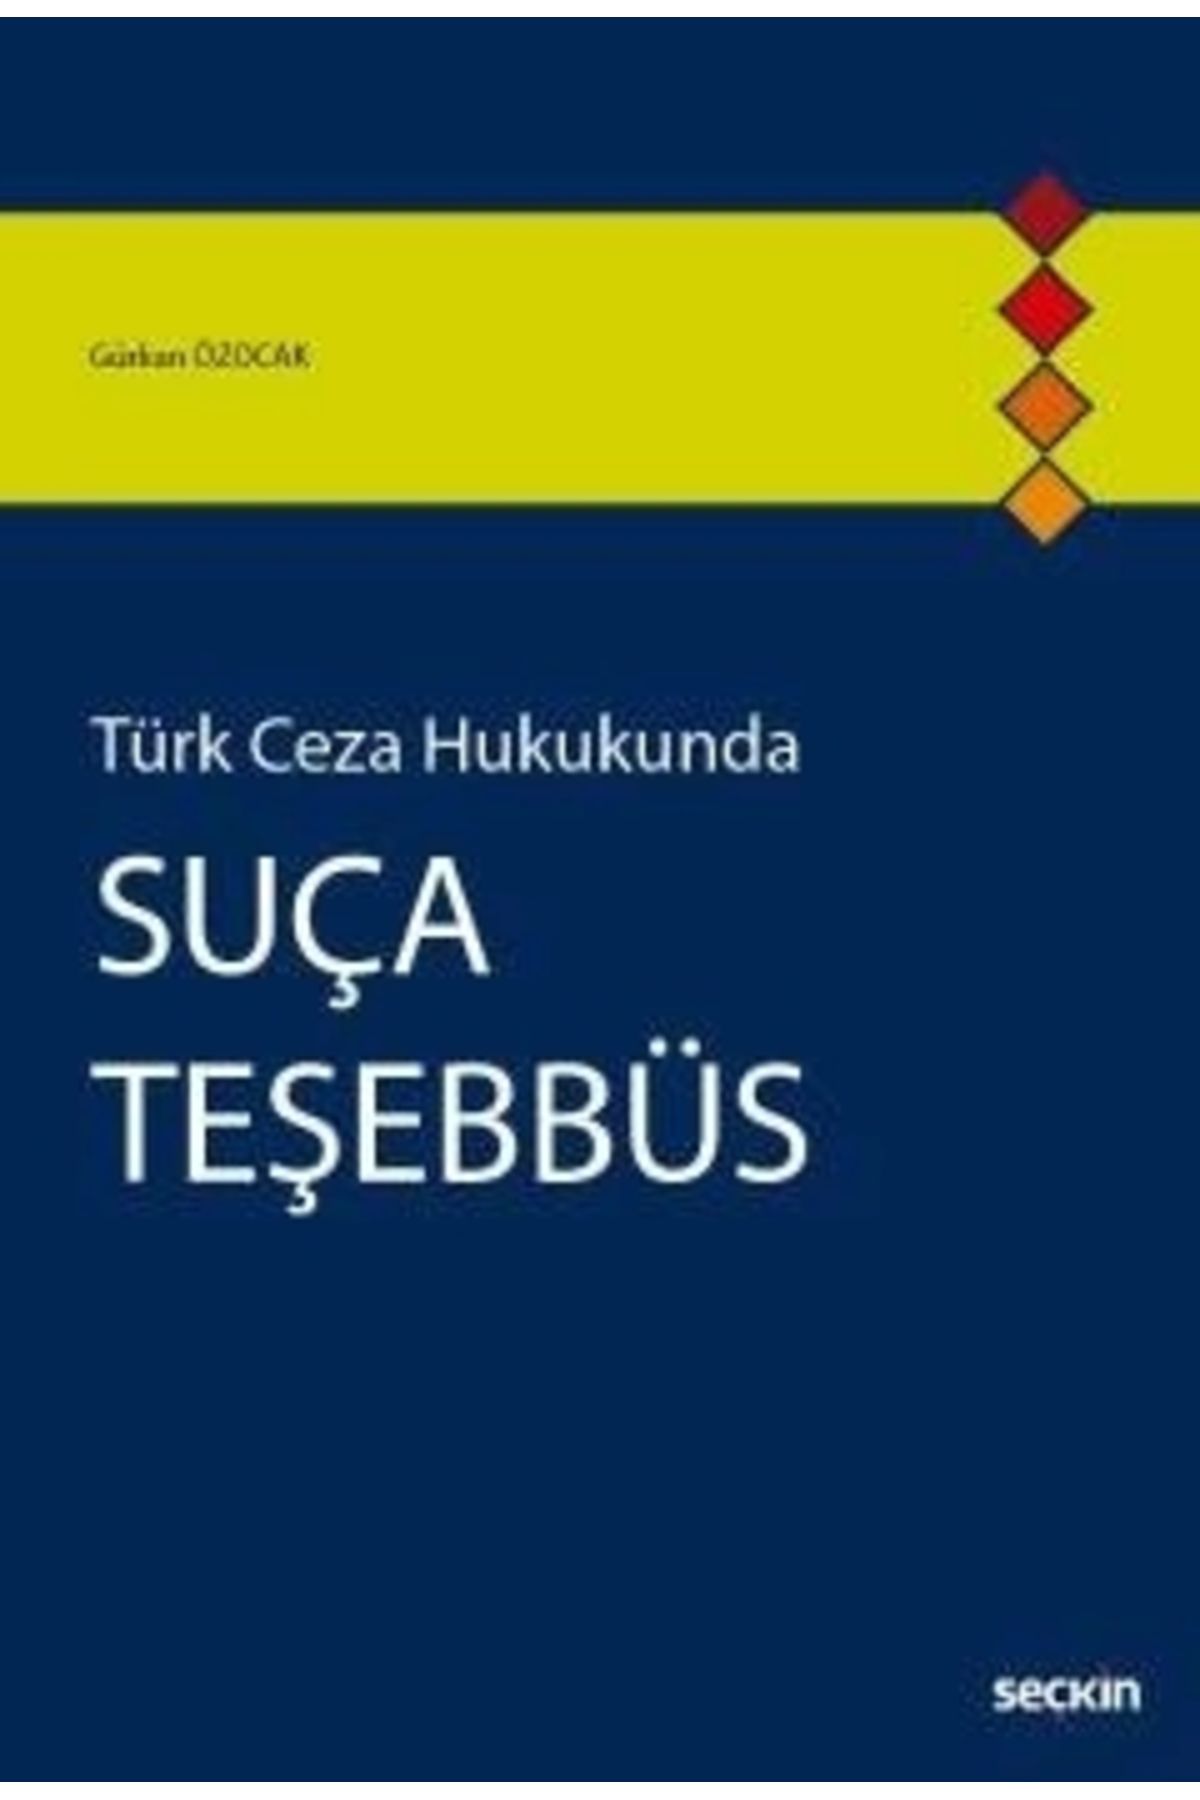 Seçkin Yayıncılık Türk Ceza Hukukundasuça Teşebbüs